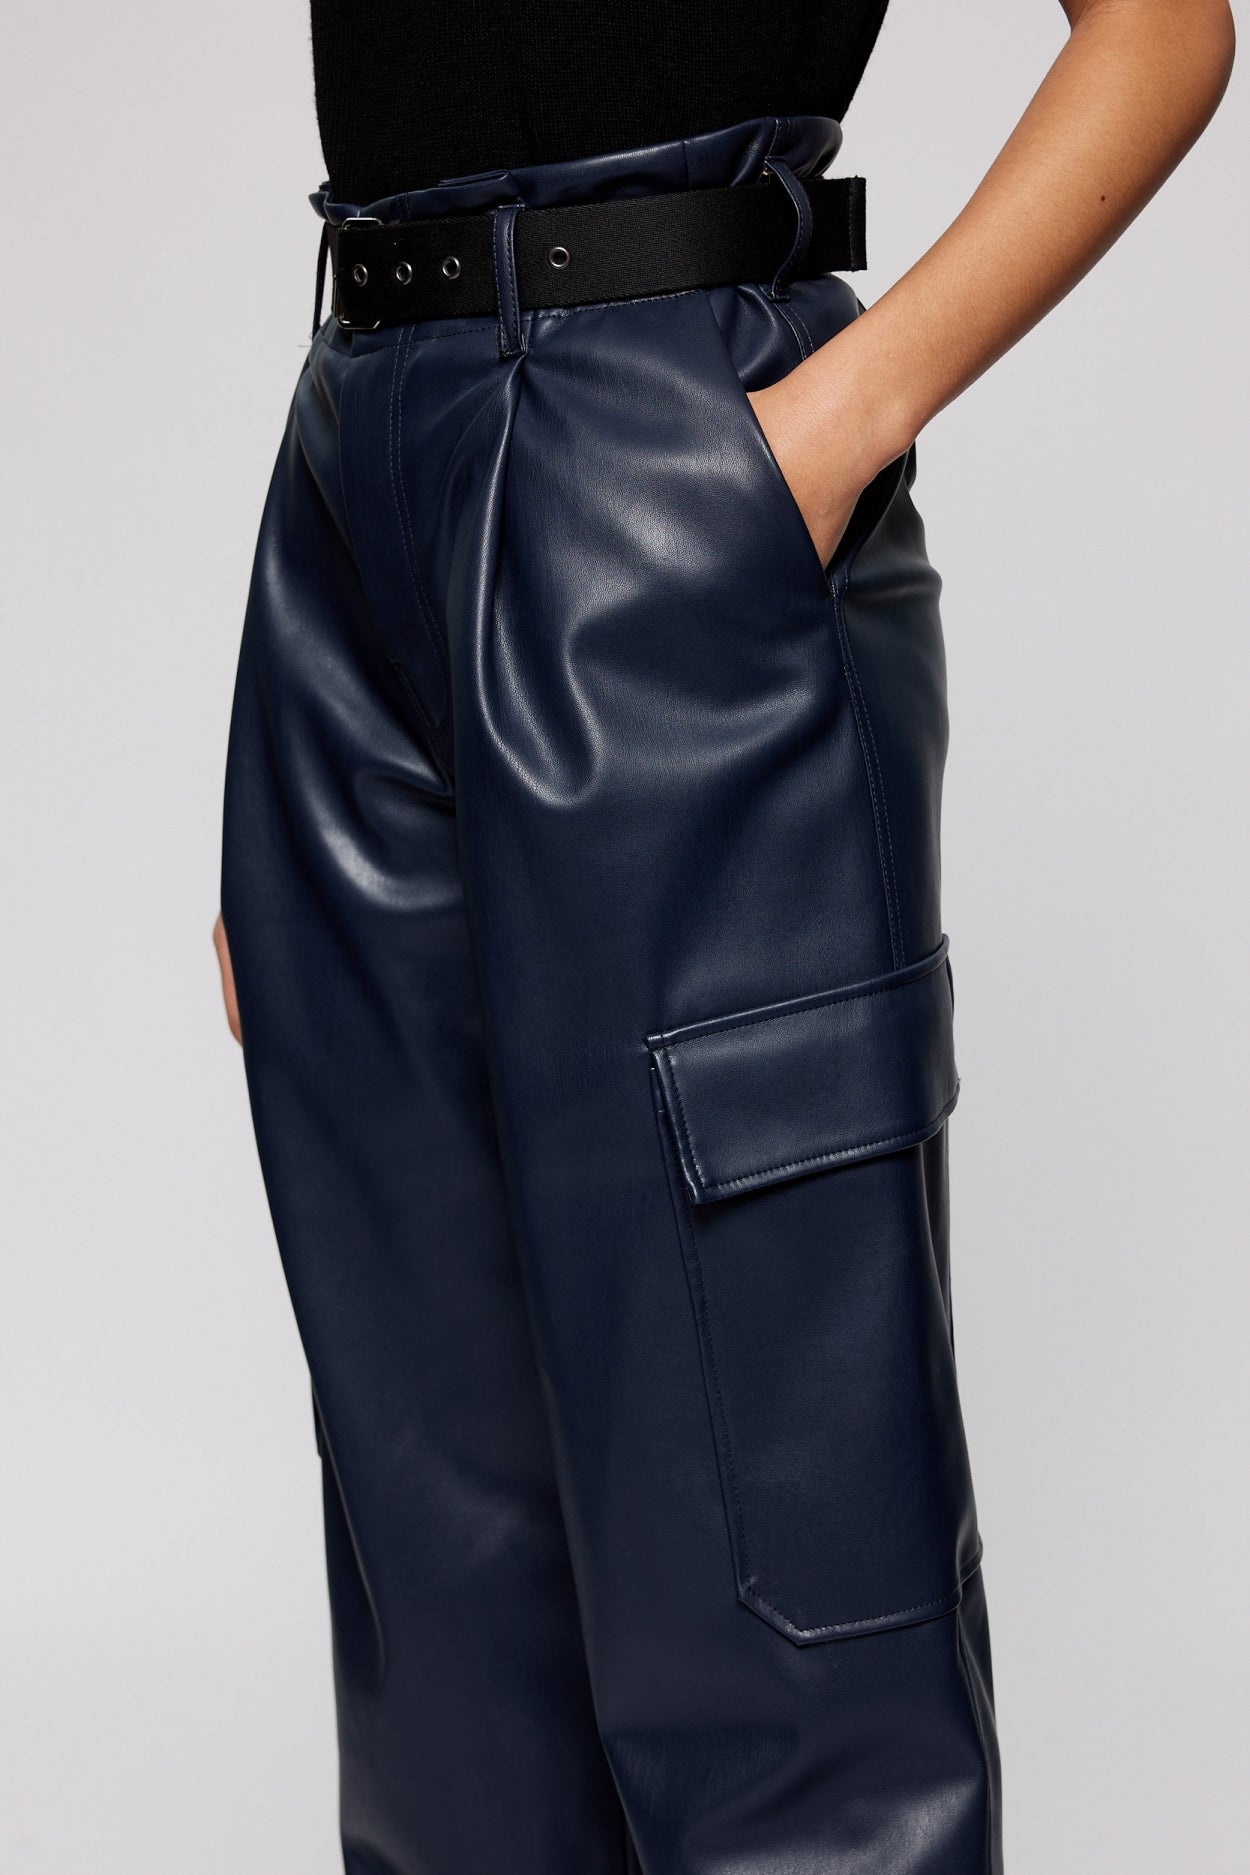 Blackout Leather Pants – diva koutureboutique